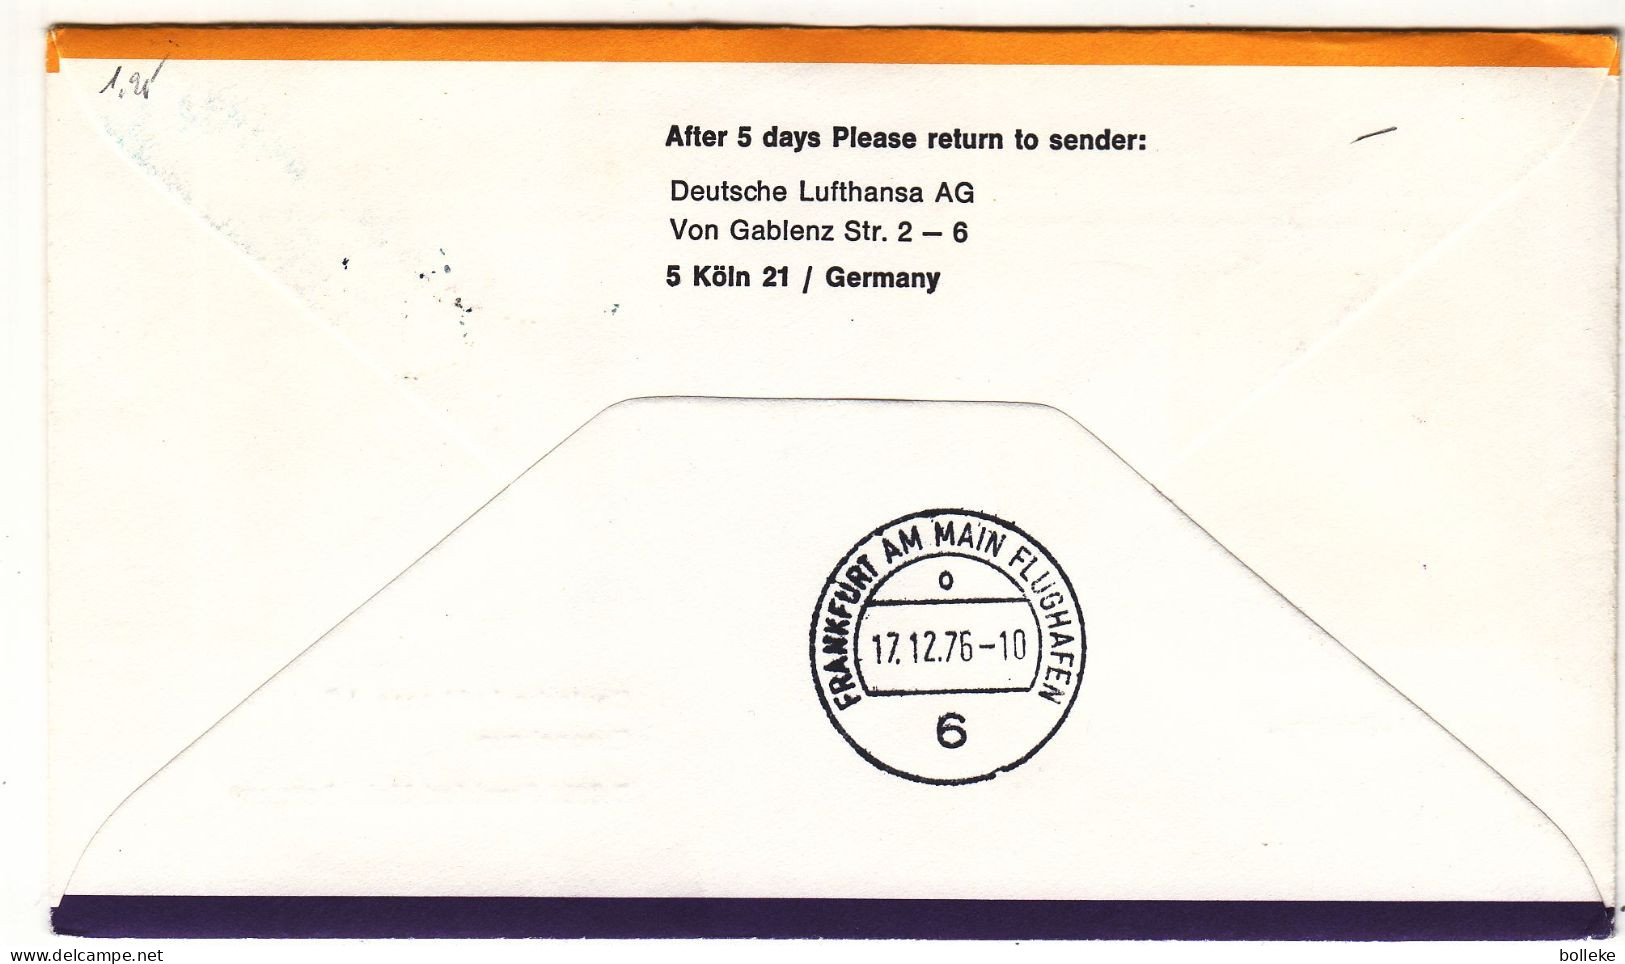 Etats Unis - Lettre De 1976 - Oblit Boston - 1er Vol Philadelphia Boston Frankfurt - - Briefe U. Dokumente